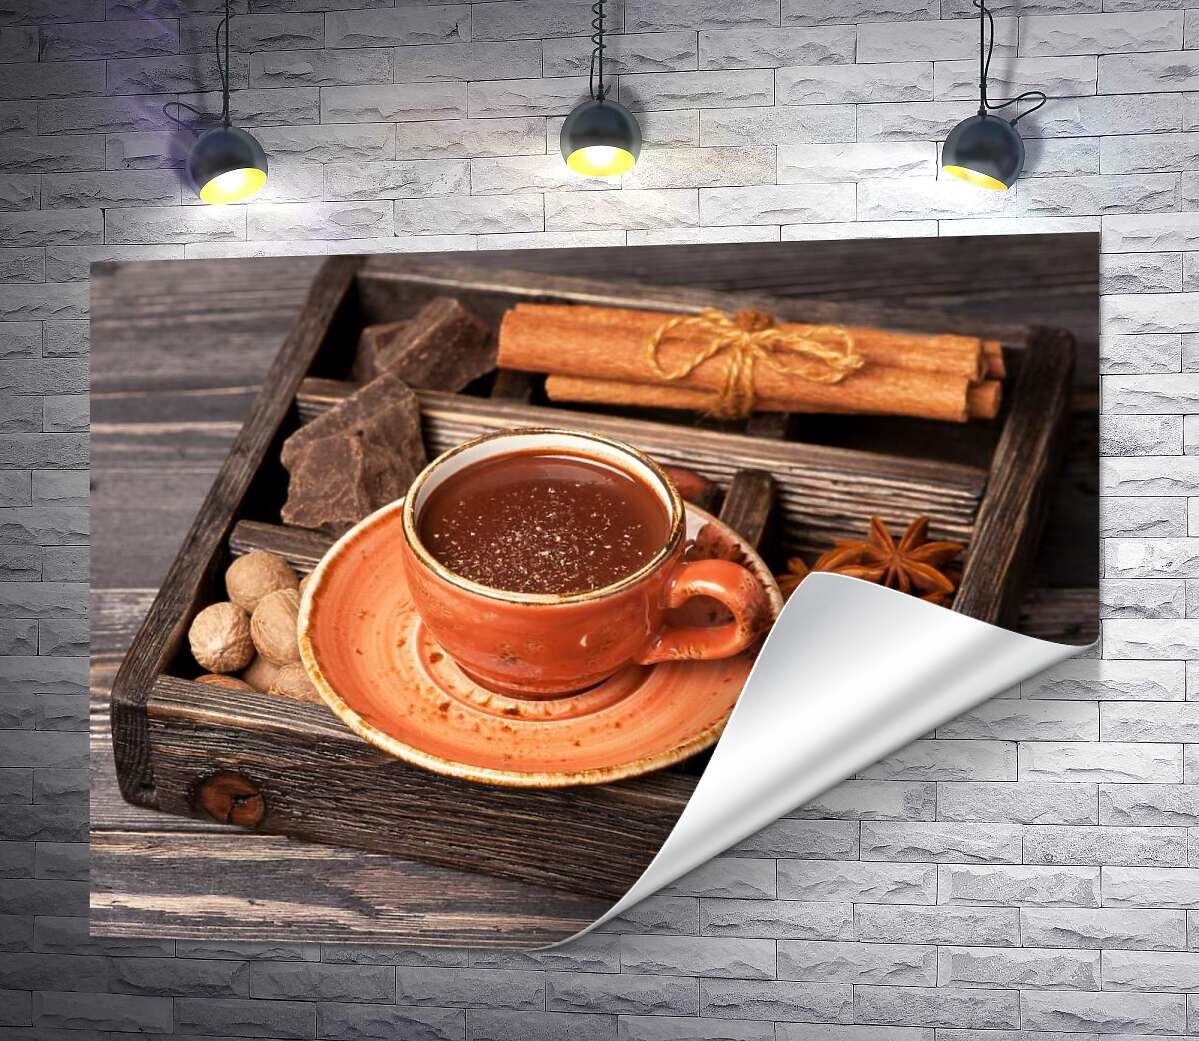 друк Доповнення до гарячого шоколаду в дерев'яному ящику: кориця, бодян, шоколад та мускатний горіх